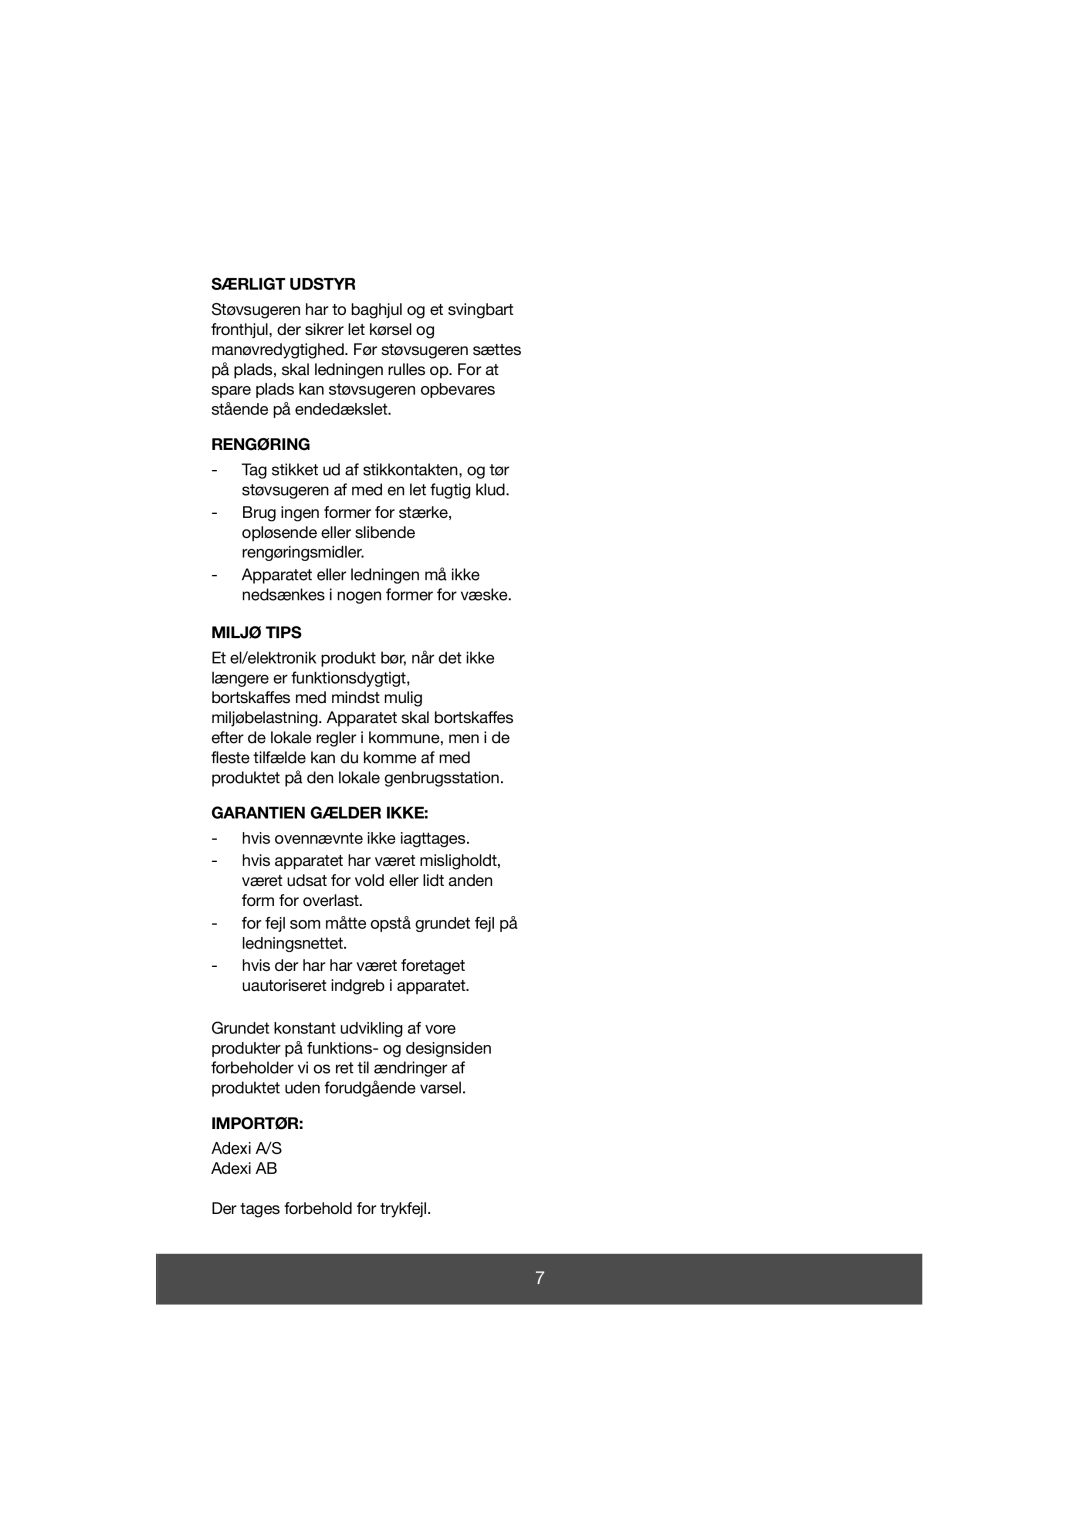 Melissa 640-038 manual Særligt Udstyr, Rengøring, Miljø Tips, Garantien Gælder Ikke, Importør 